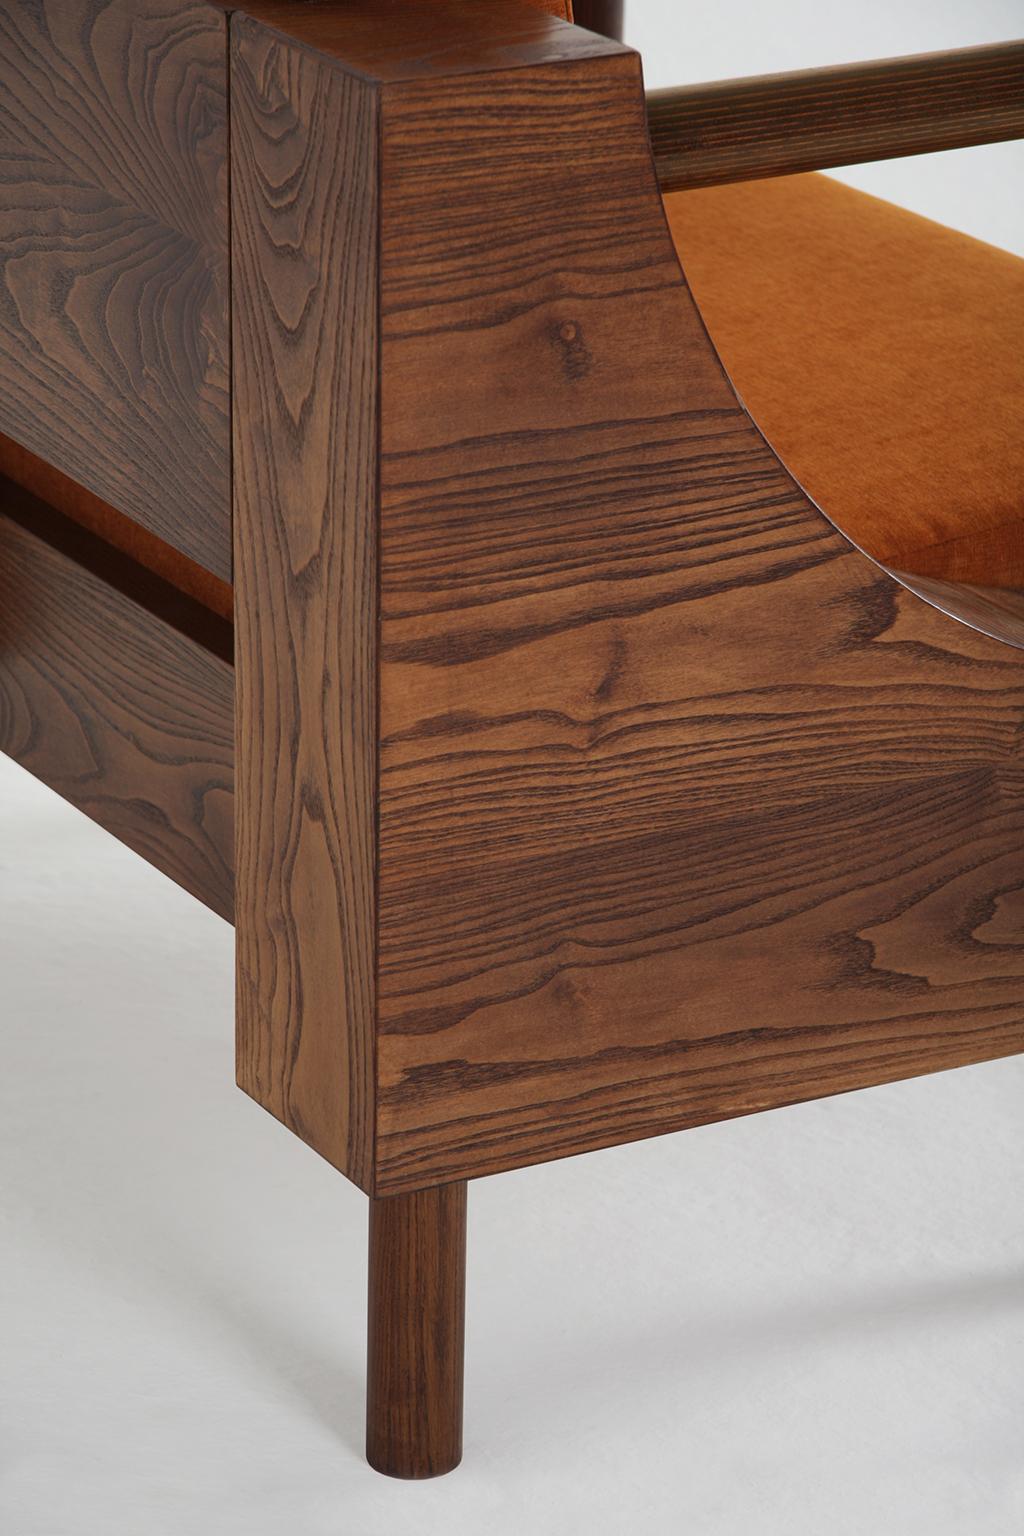 European Modern Wooden Armchair from 